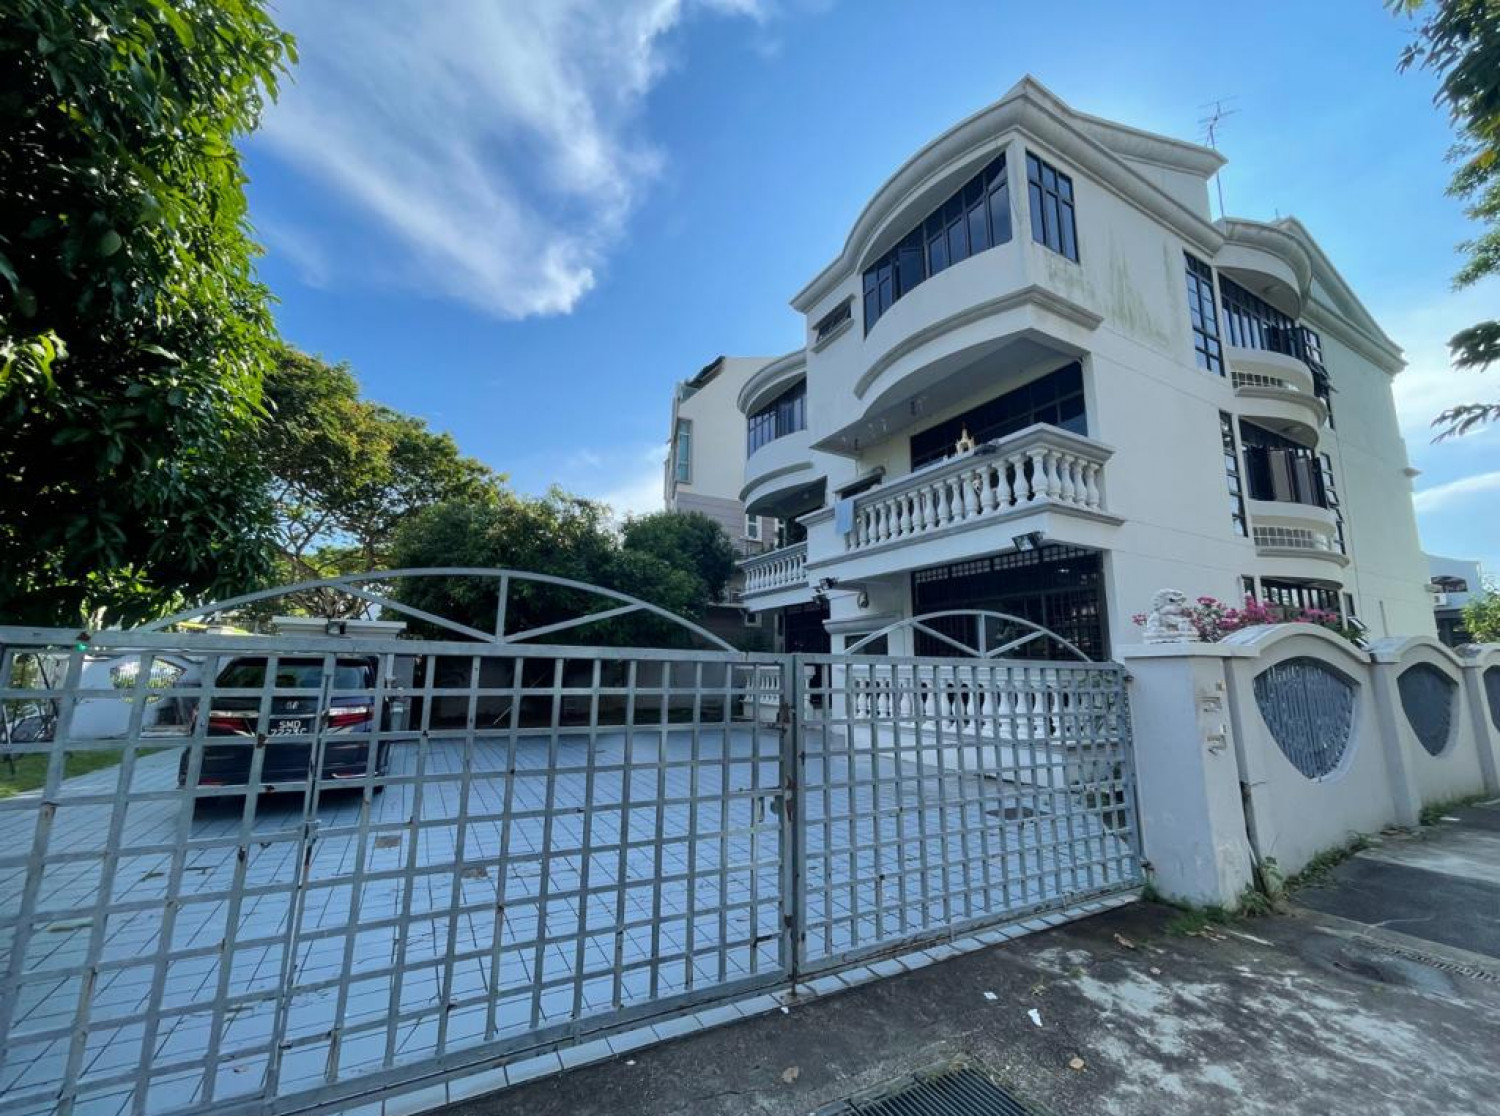 Sevens Group buys freehold property on Jalan Ulu Siglap for $10.3 mil - Property News